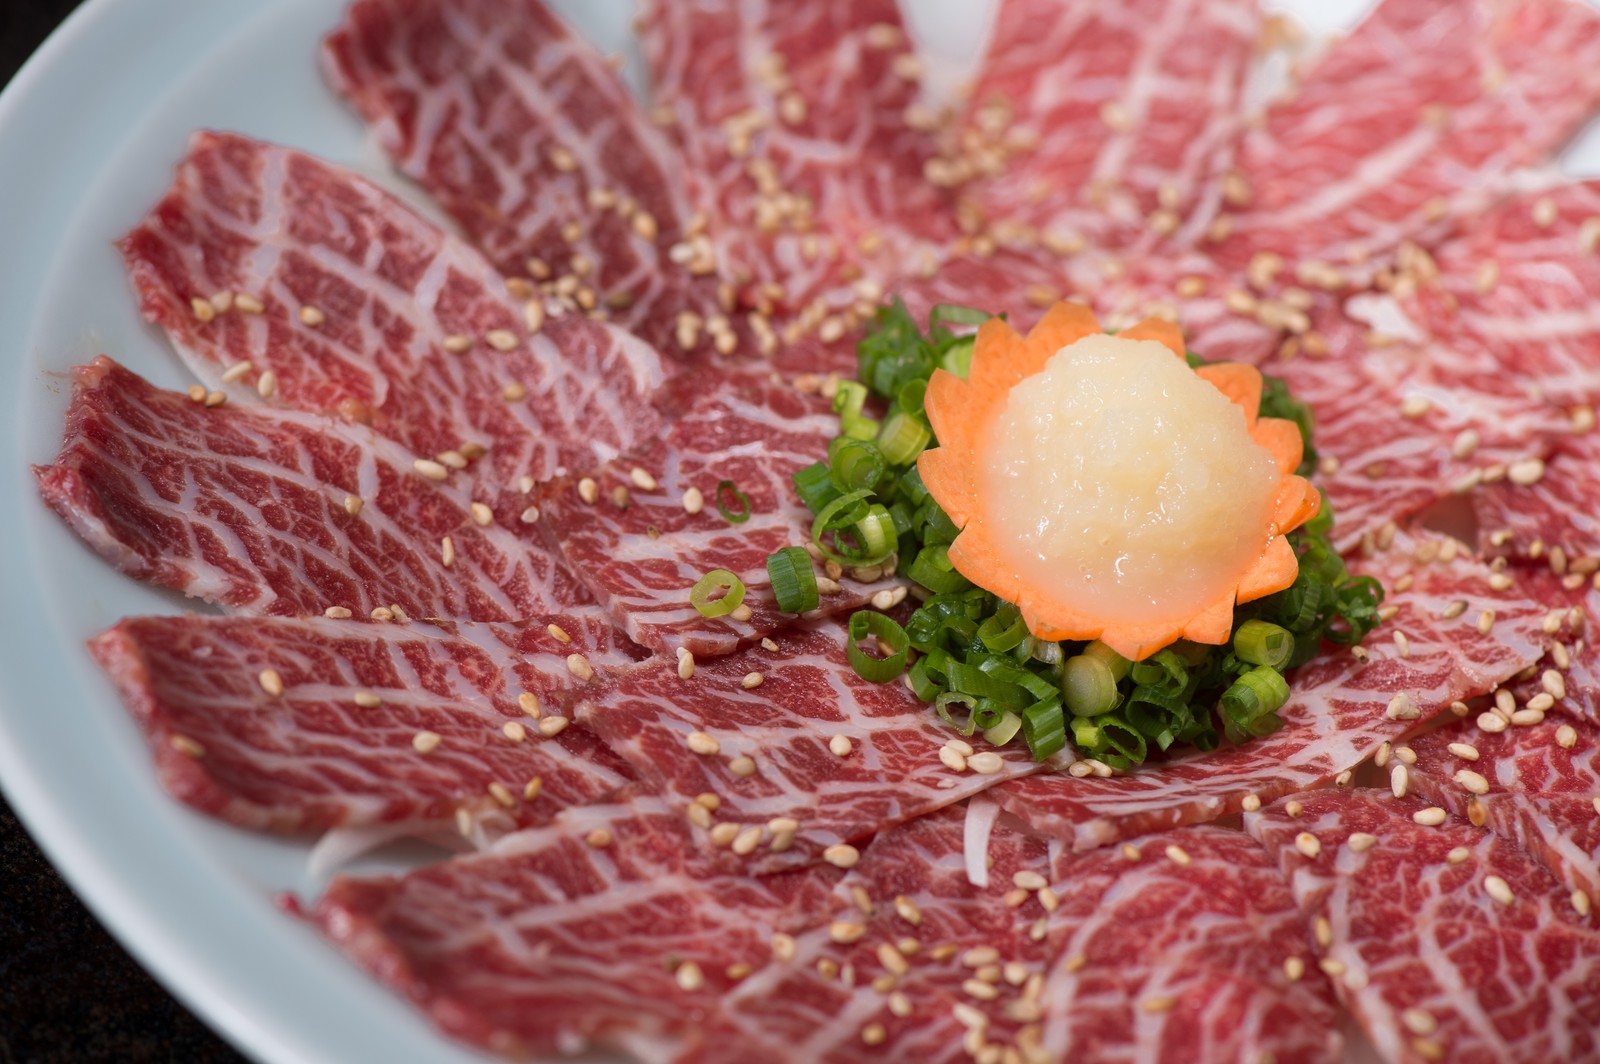 神楽坂でおすすめの肉料理店はここ 安い 美味しい人気店をご紹介 Travelnote トラベルノート